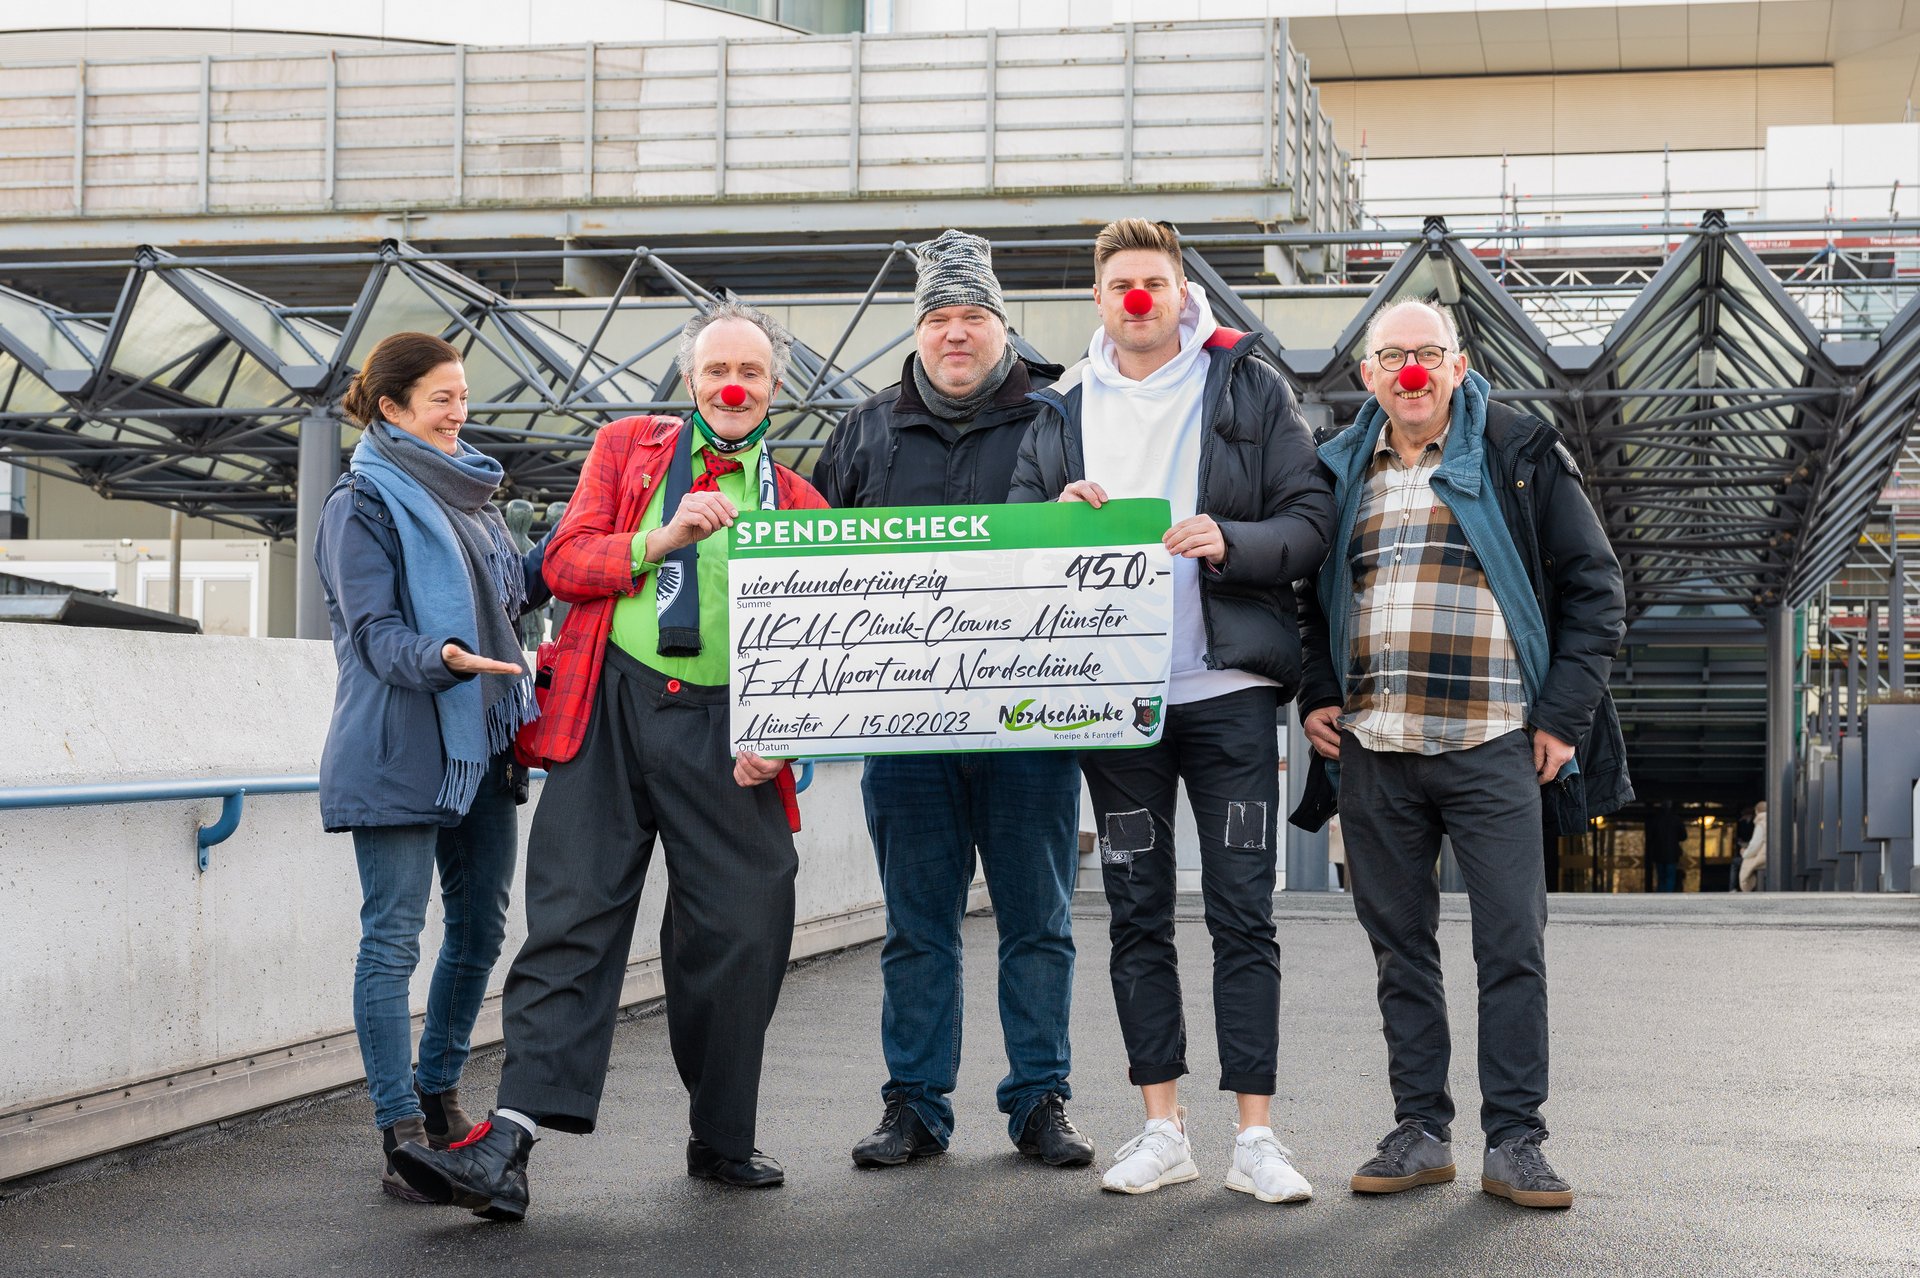 Spendenübergabe Preußen-Fans | UKM Clinic Clowns